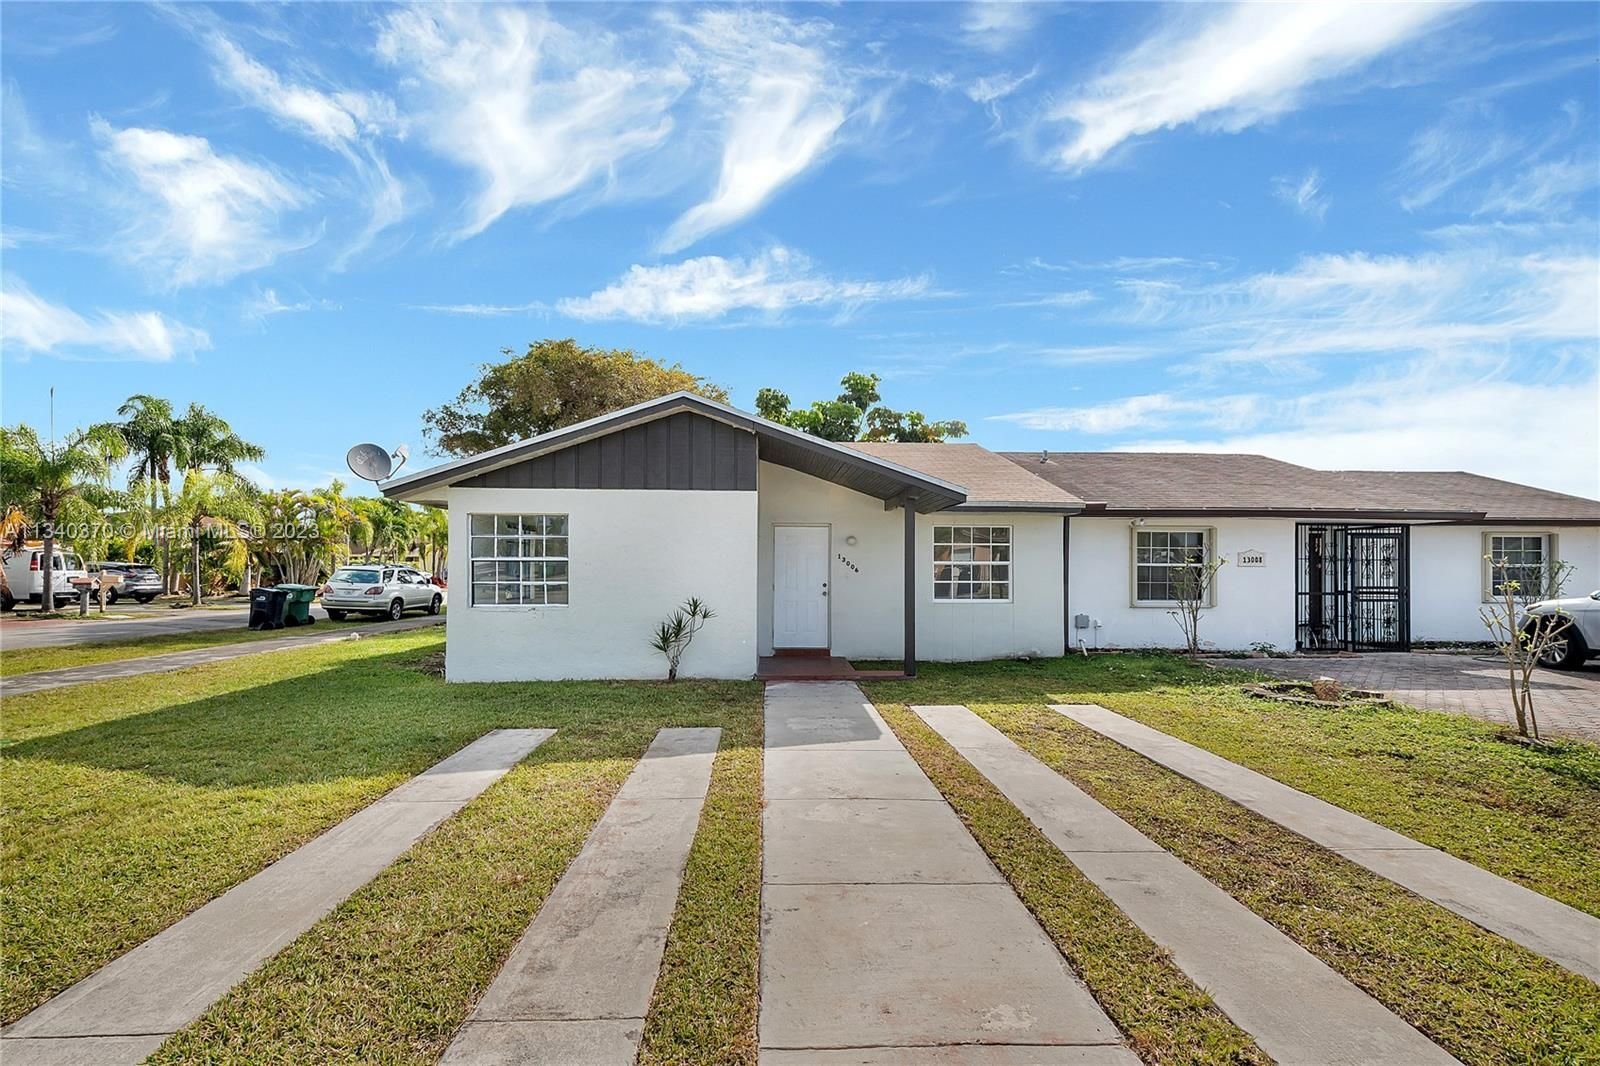 Real estate property located at 13006 68th Ln #2, Miami-Dade County, Miami, FL